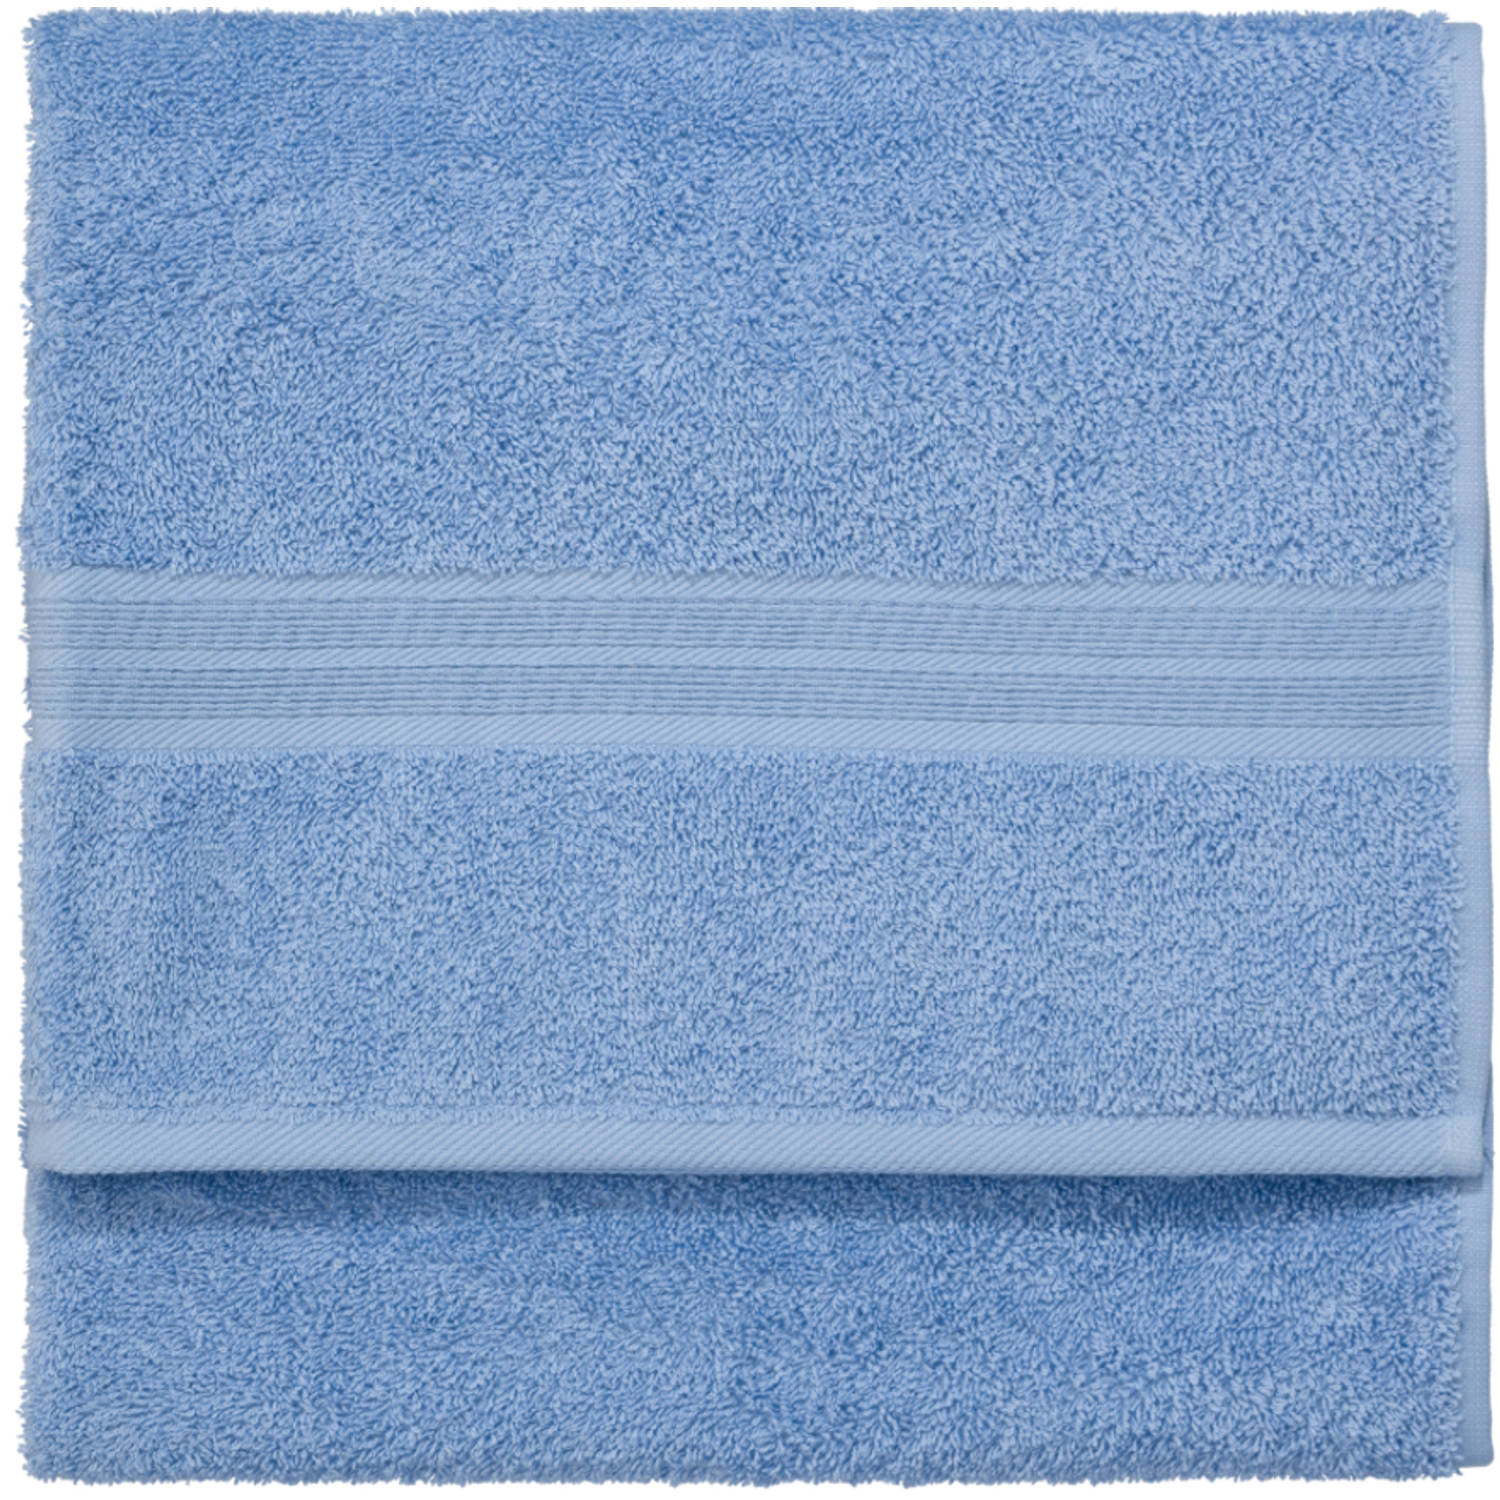 Verandert in Turbine Incarijk Blokker handdoek 500g - blauw - 110x60 cm | Blokker